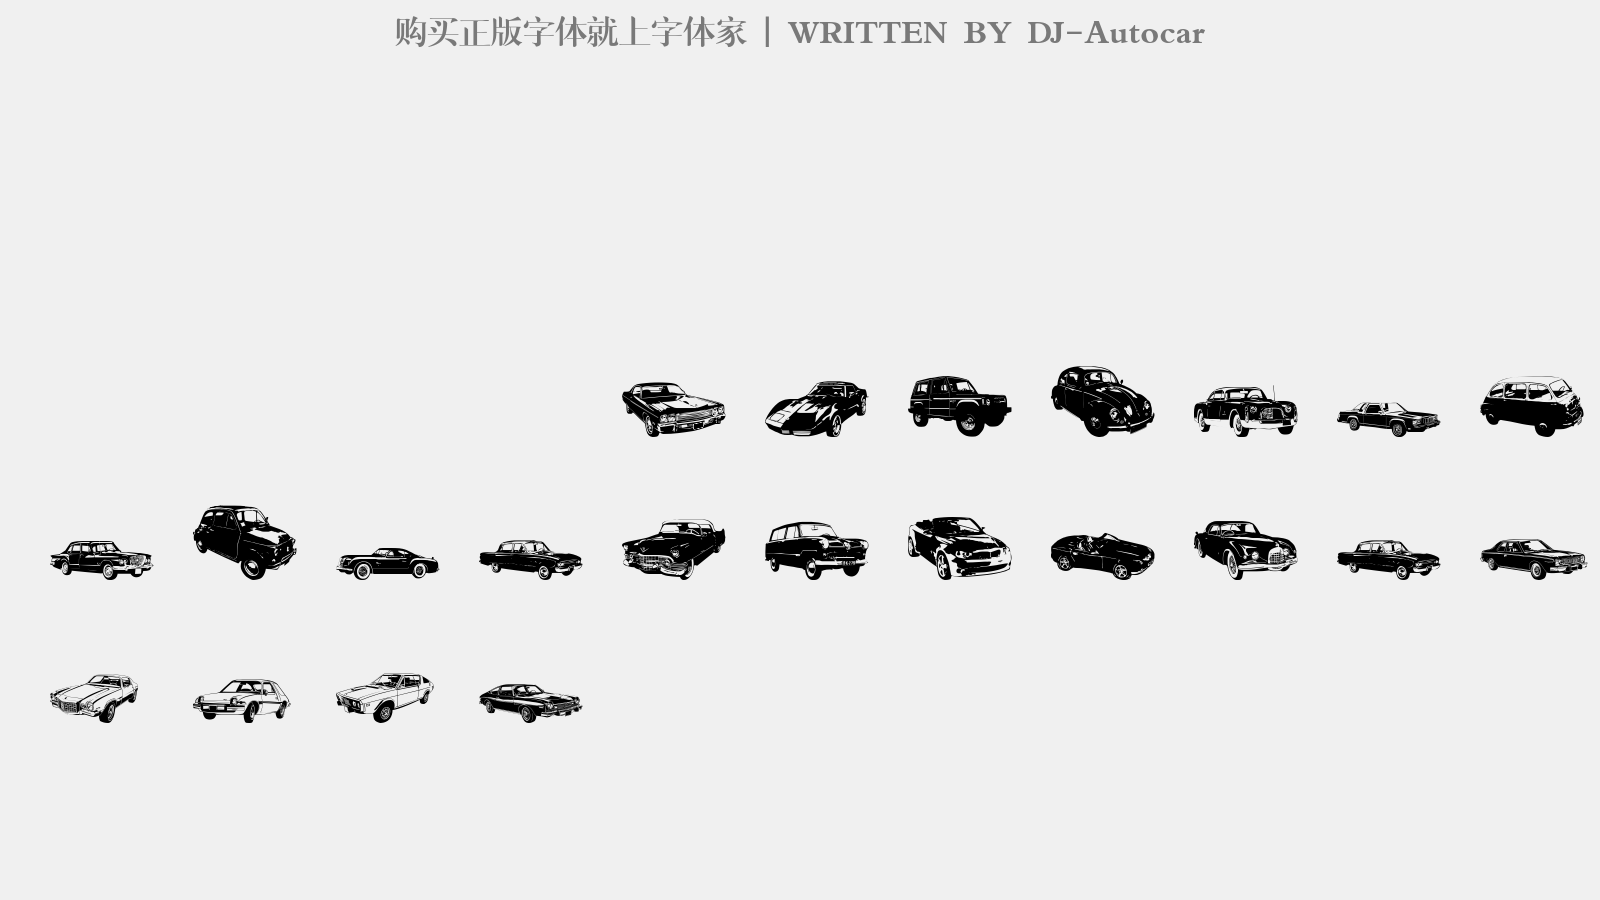 DJ-Autocar - 大写字母/小写字母/数字